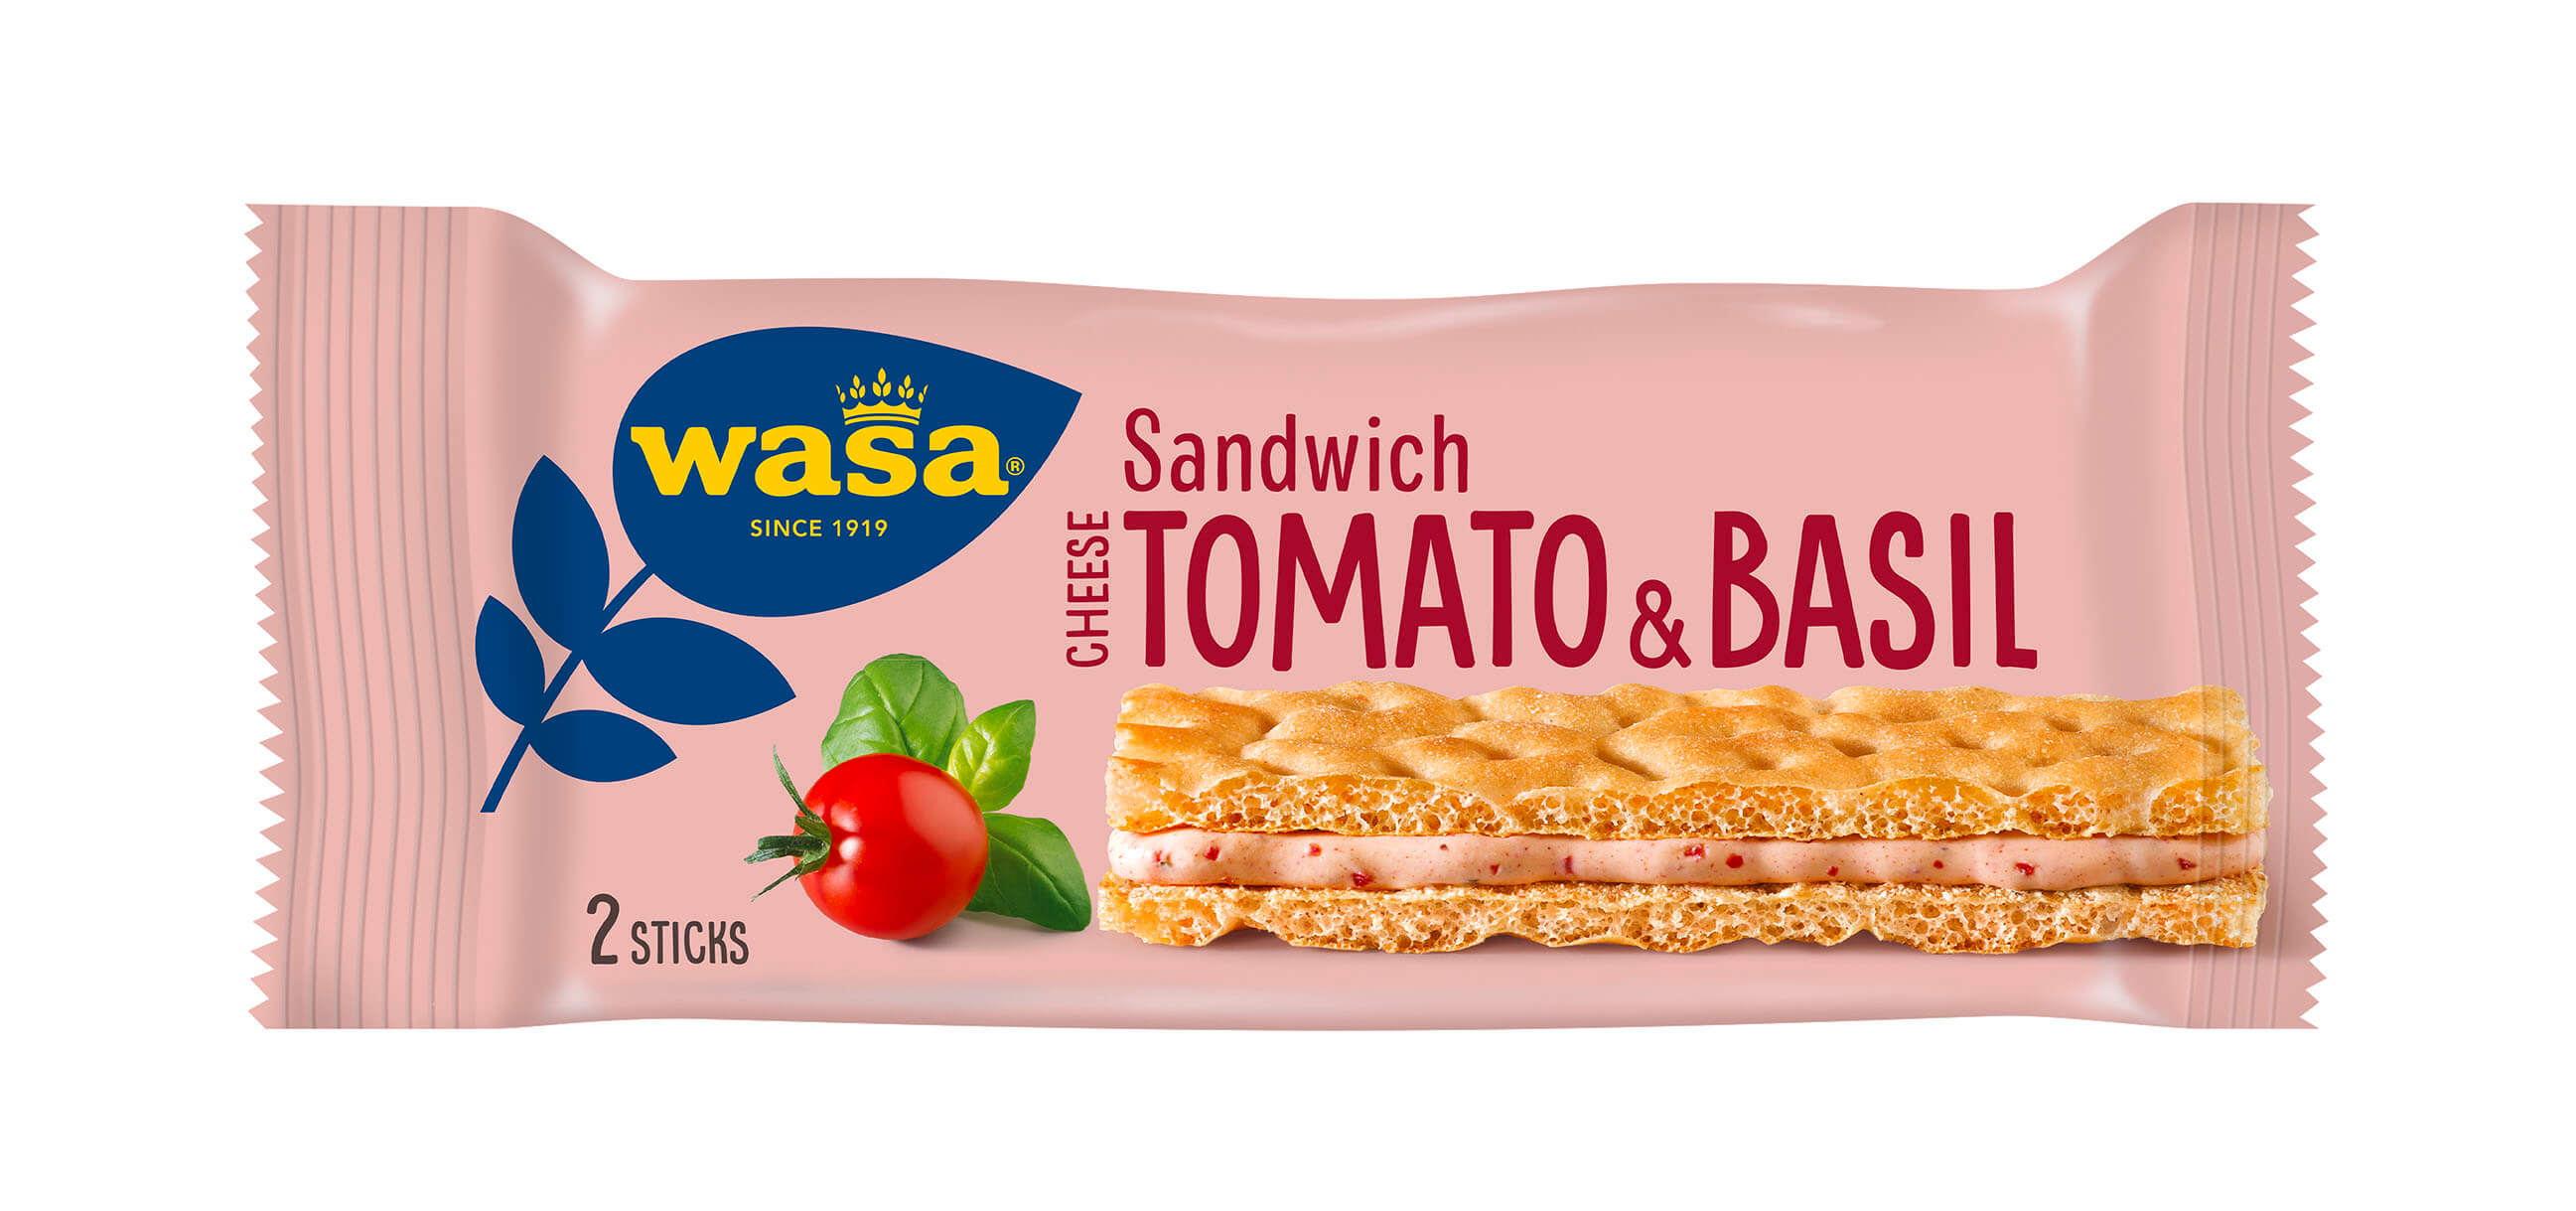 Wasa Sandwich Tomato & Basil - Upptäck det perfekta mellanmålet, gott knäckebröd med krämig fyllning. Utmärkt som ett lätt mellanmål på språng och som bra mellanmål på jobbet, efter skolan eller innan träning.